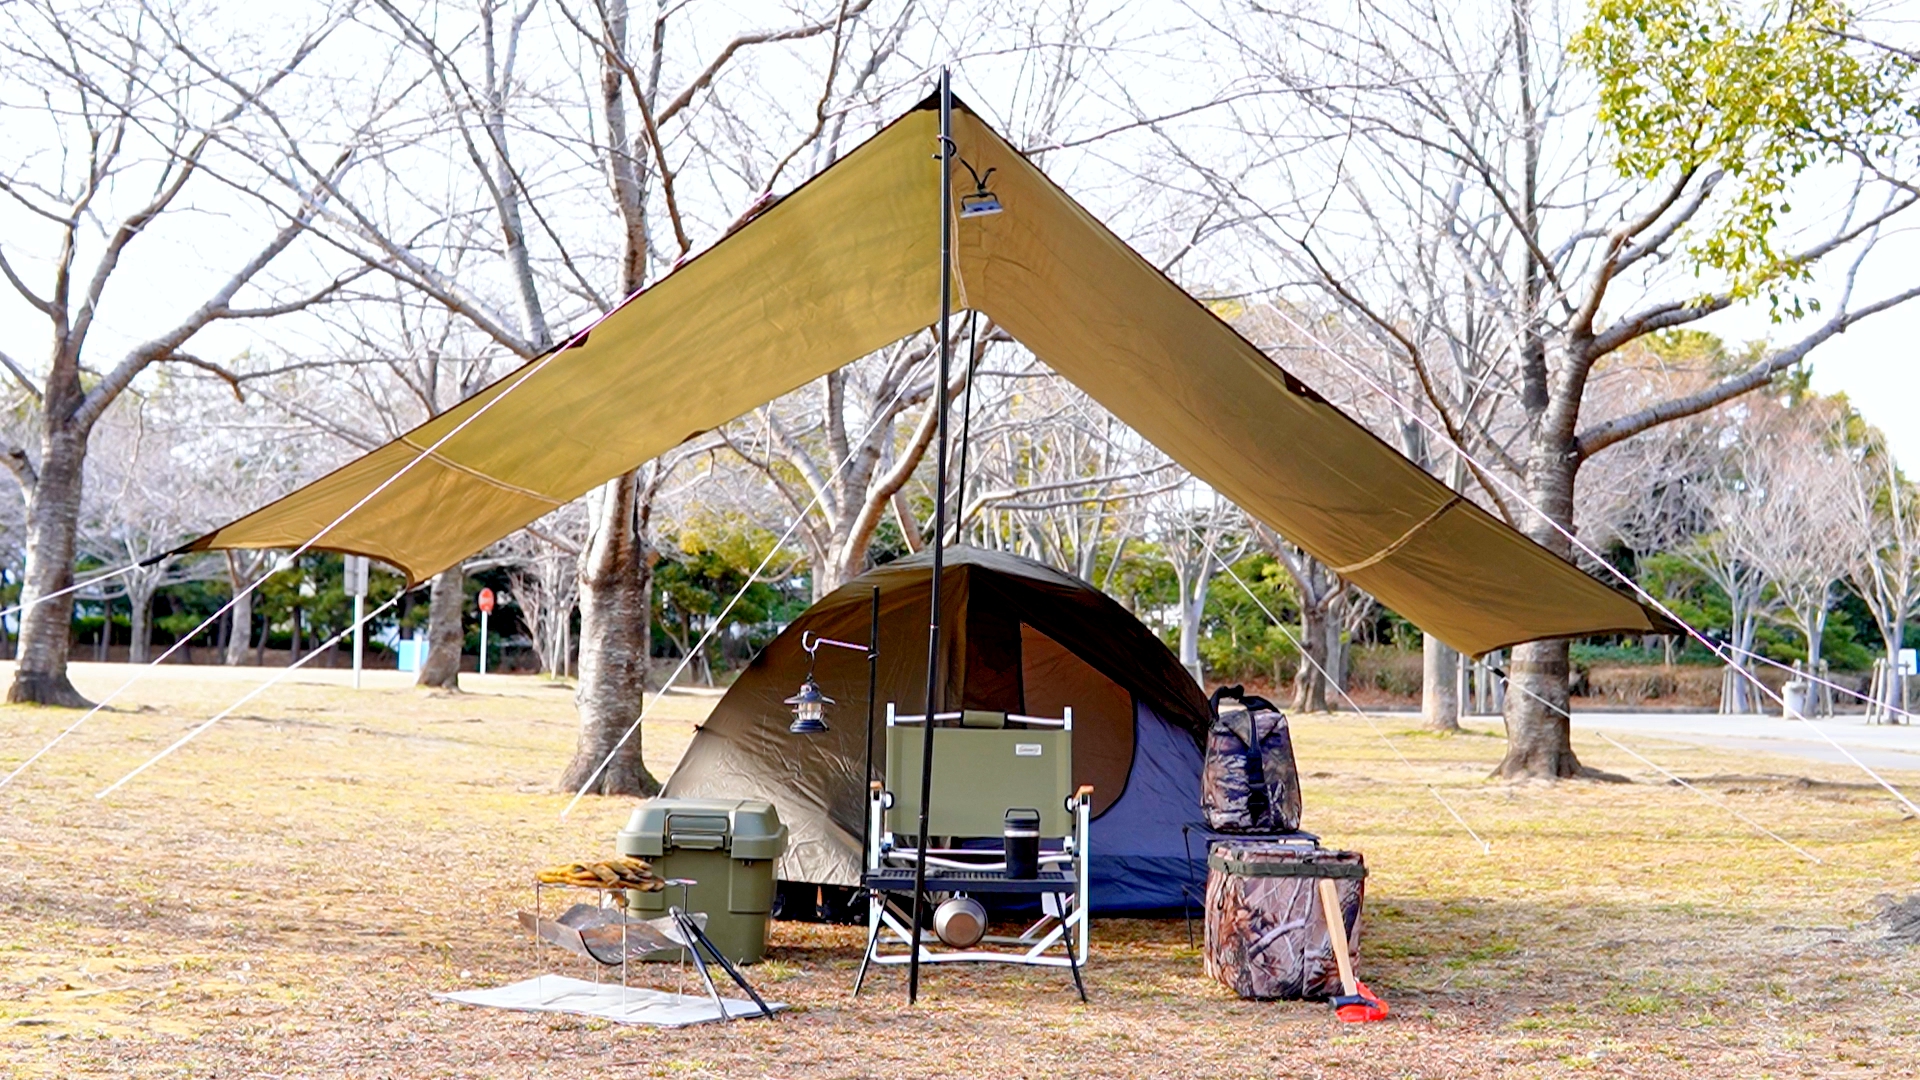 総額 万円 キャンプ初心者装備一式 キャンプ歴3年のソロキャンパーが選んだキャンプ道具31点 ソロキャンブログ